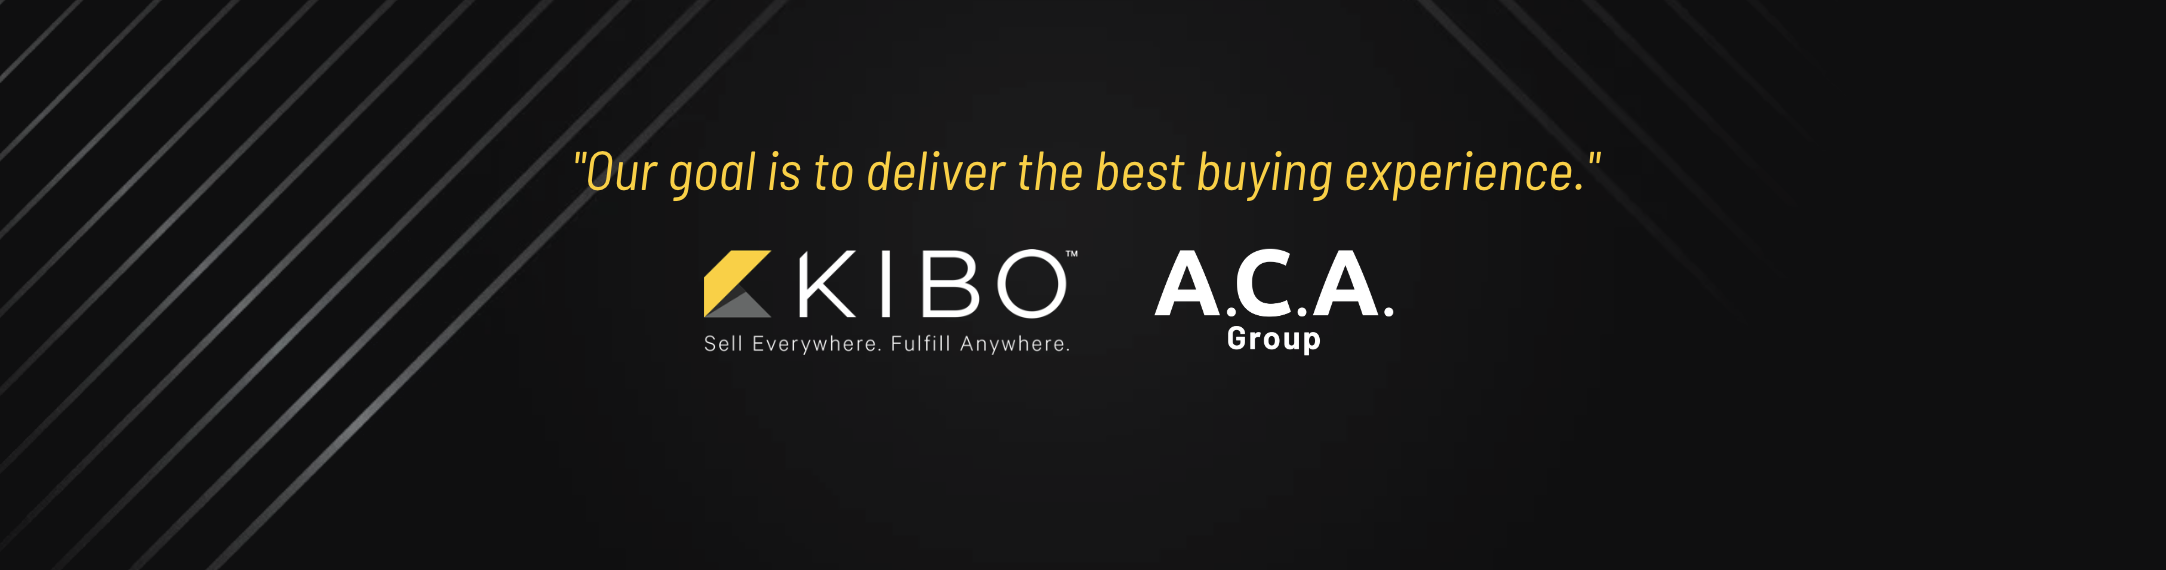 KIBO and ACA Group